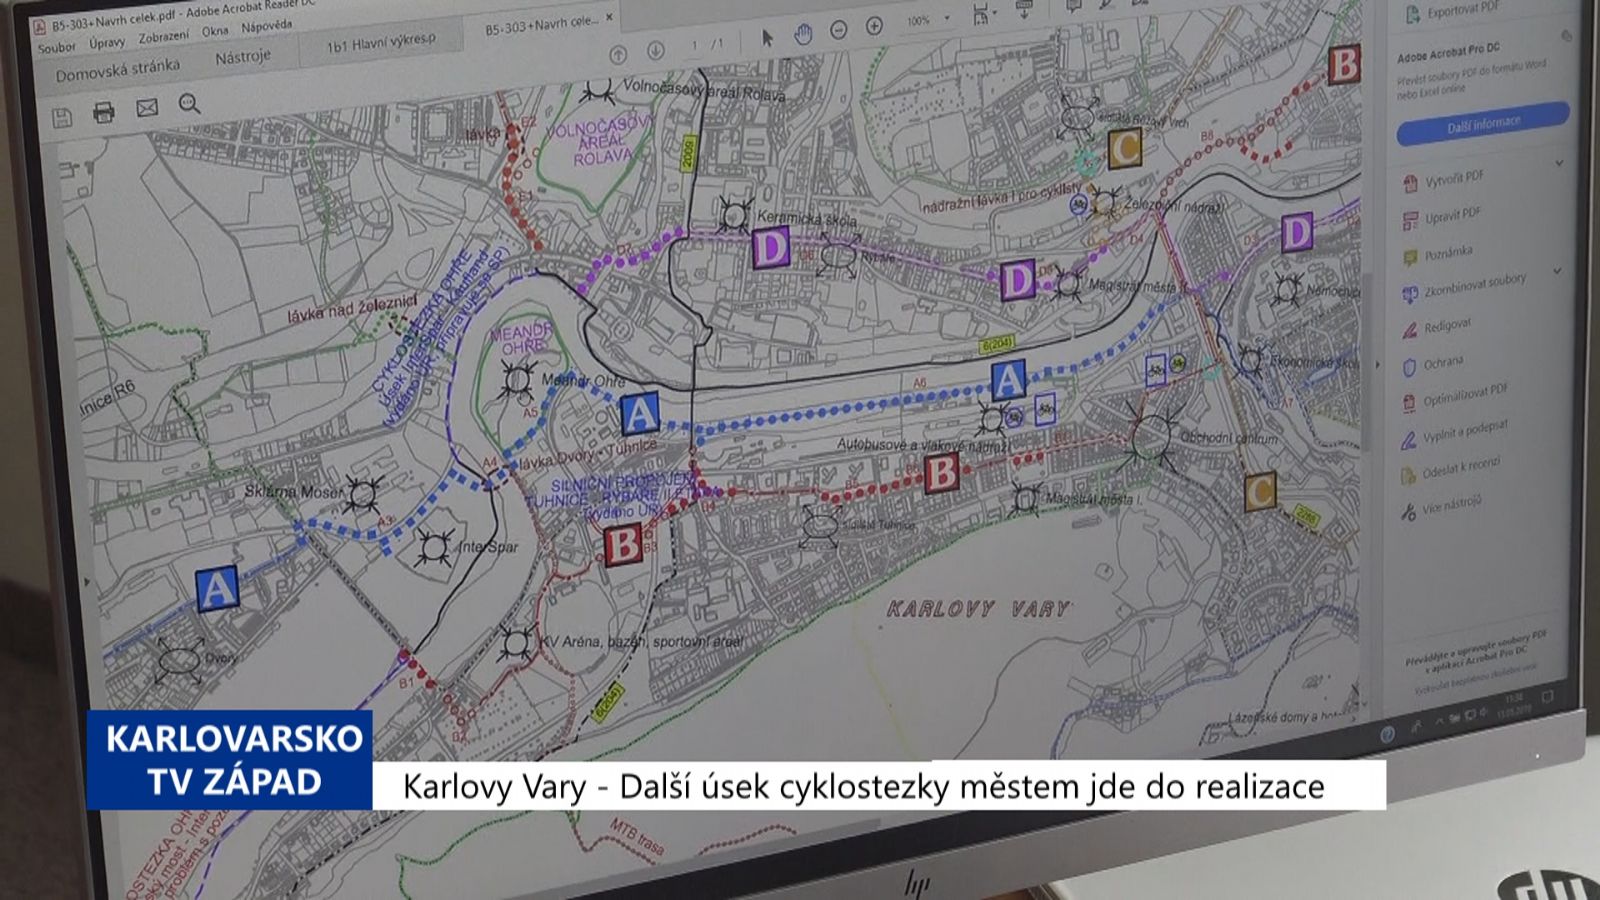 Karlovy Vary: Další úsek cyklostezky městem jde do realizace (TV Západ)